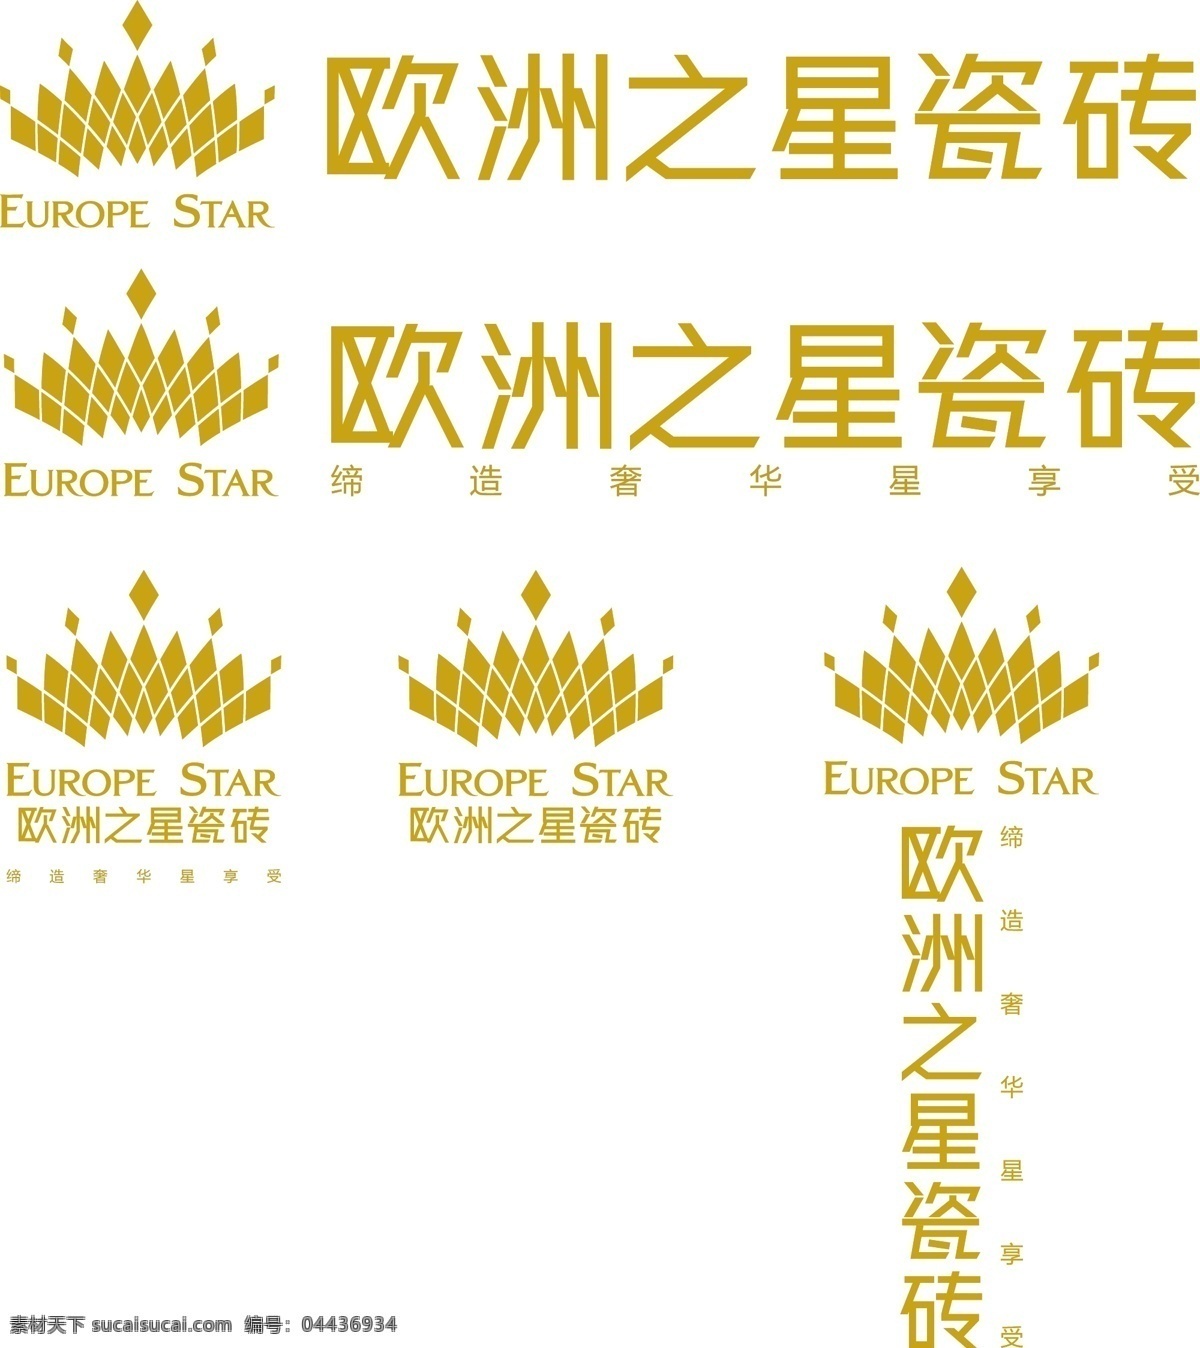 欧洲之星 瓷砖 logo 标志 矢量图